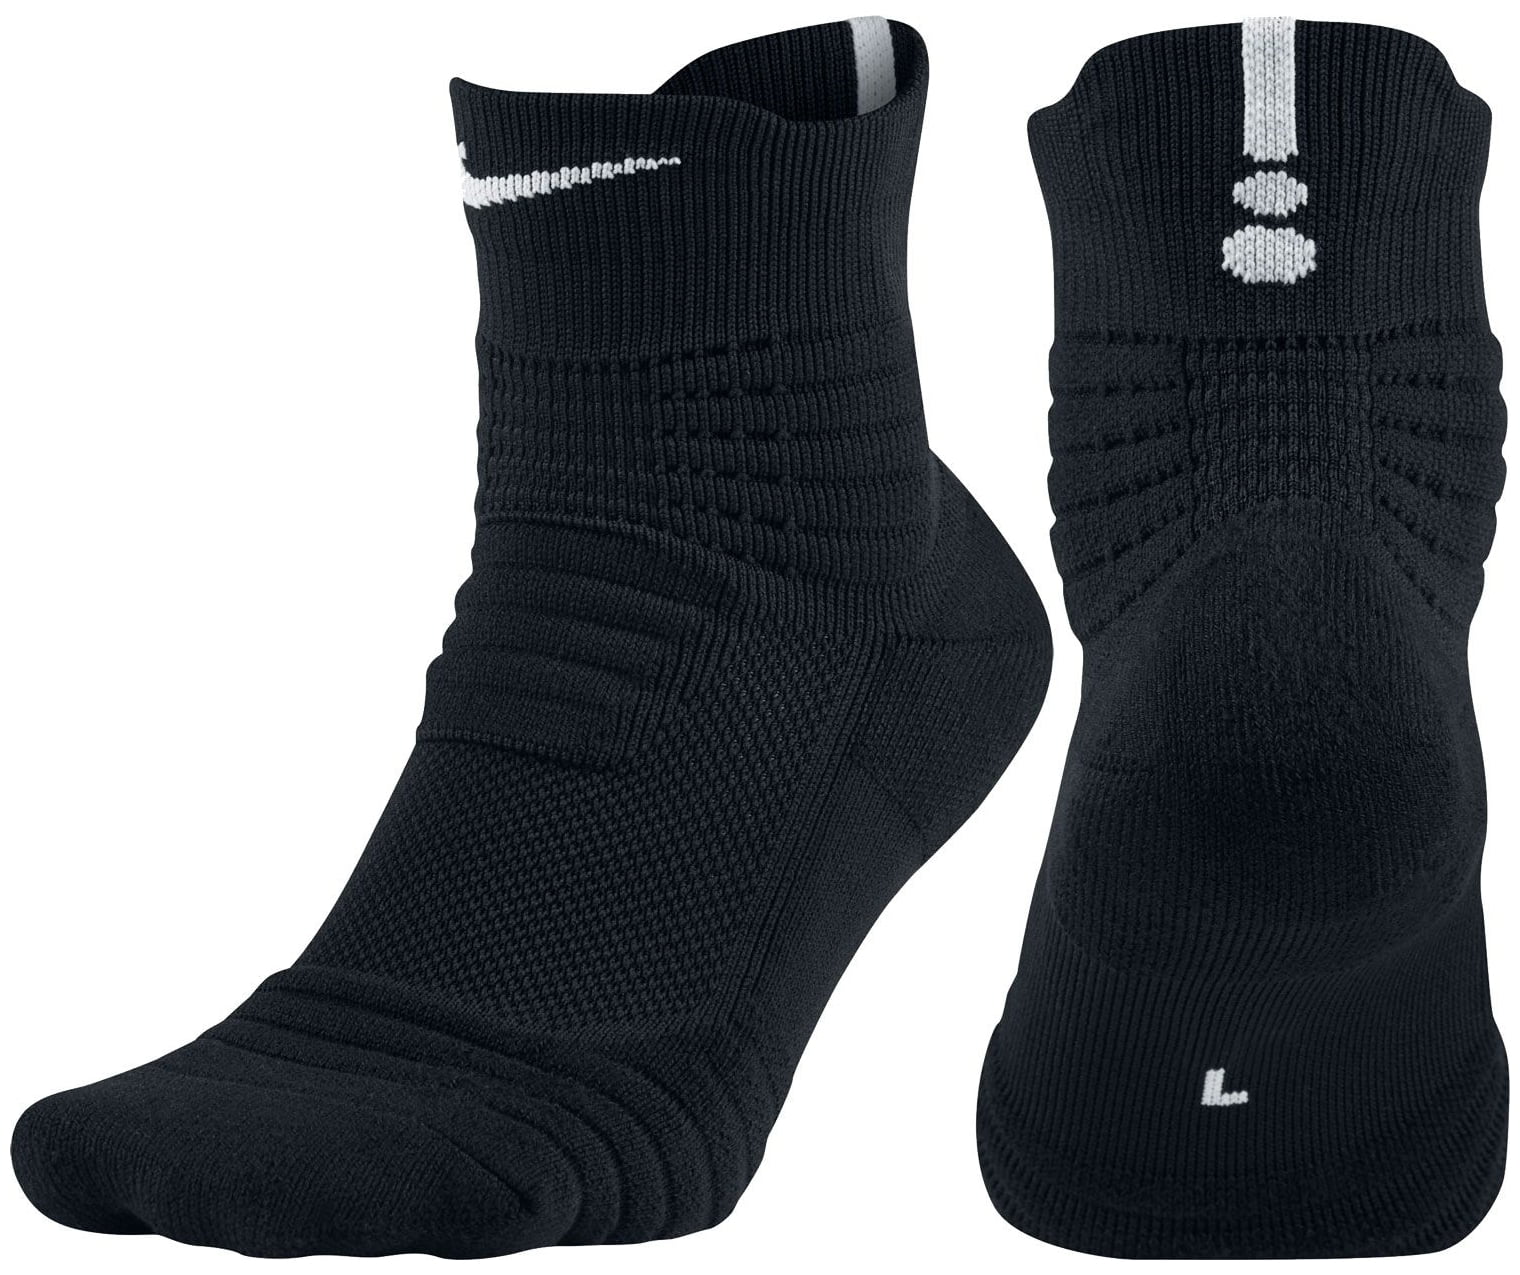 elite socks black and white